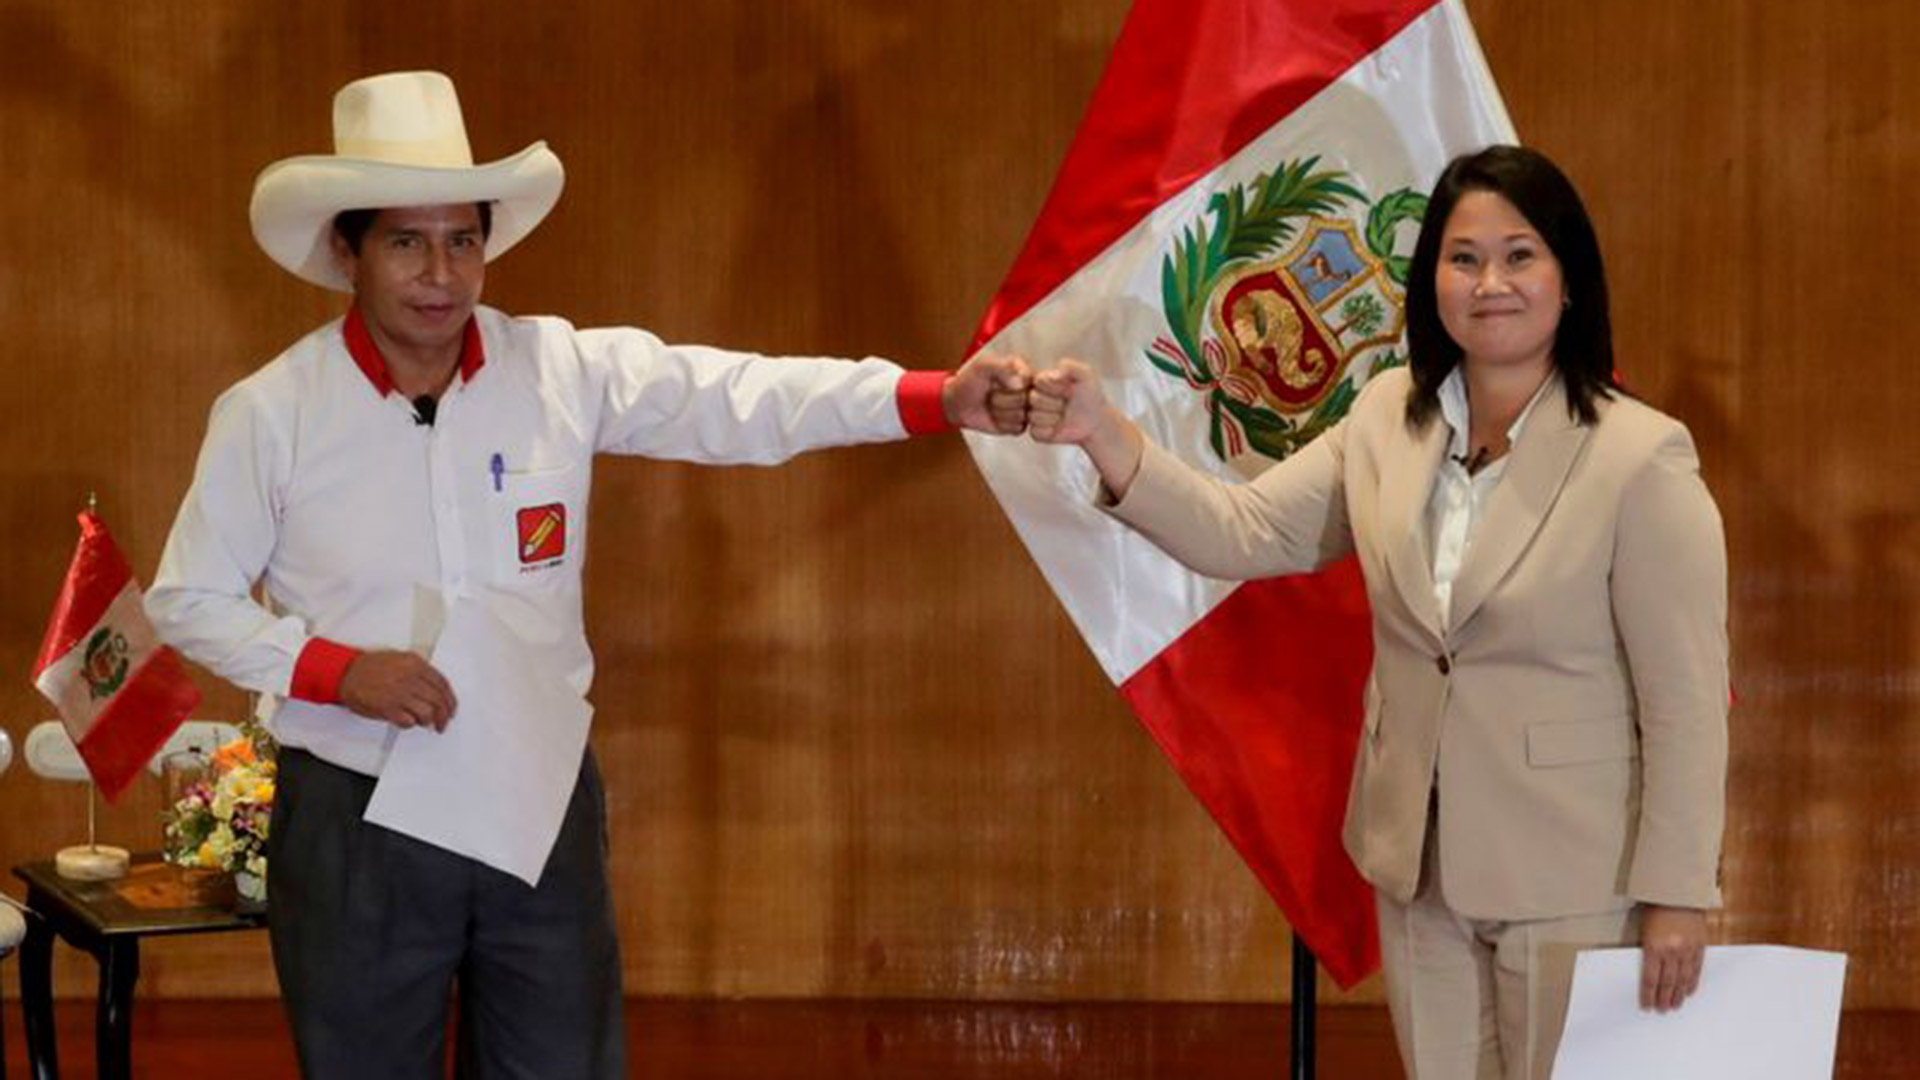 FOTO DE ARCHIVO: Los candidatos presidenciales peruanos Pedro Castillo y Keiko Fujimori, que se enfrentan en una segunda vuelta, tras firmar un "Pacto por la Democracia", en Lima, Perú, el 17 de mayo de 2021. REUTERS/Sebastian Castaneda/